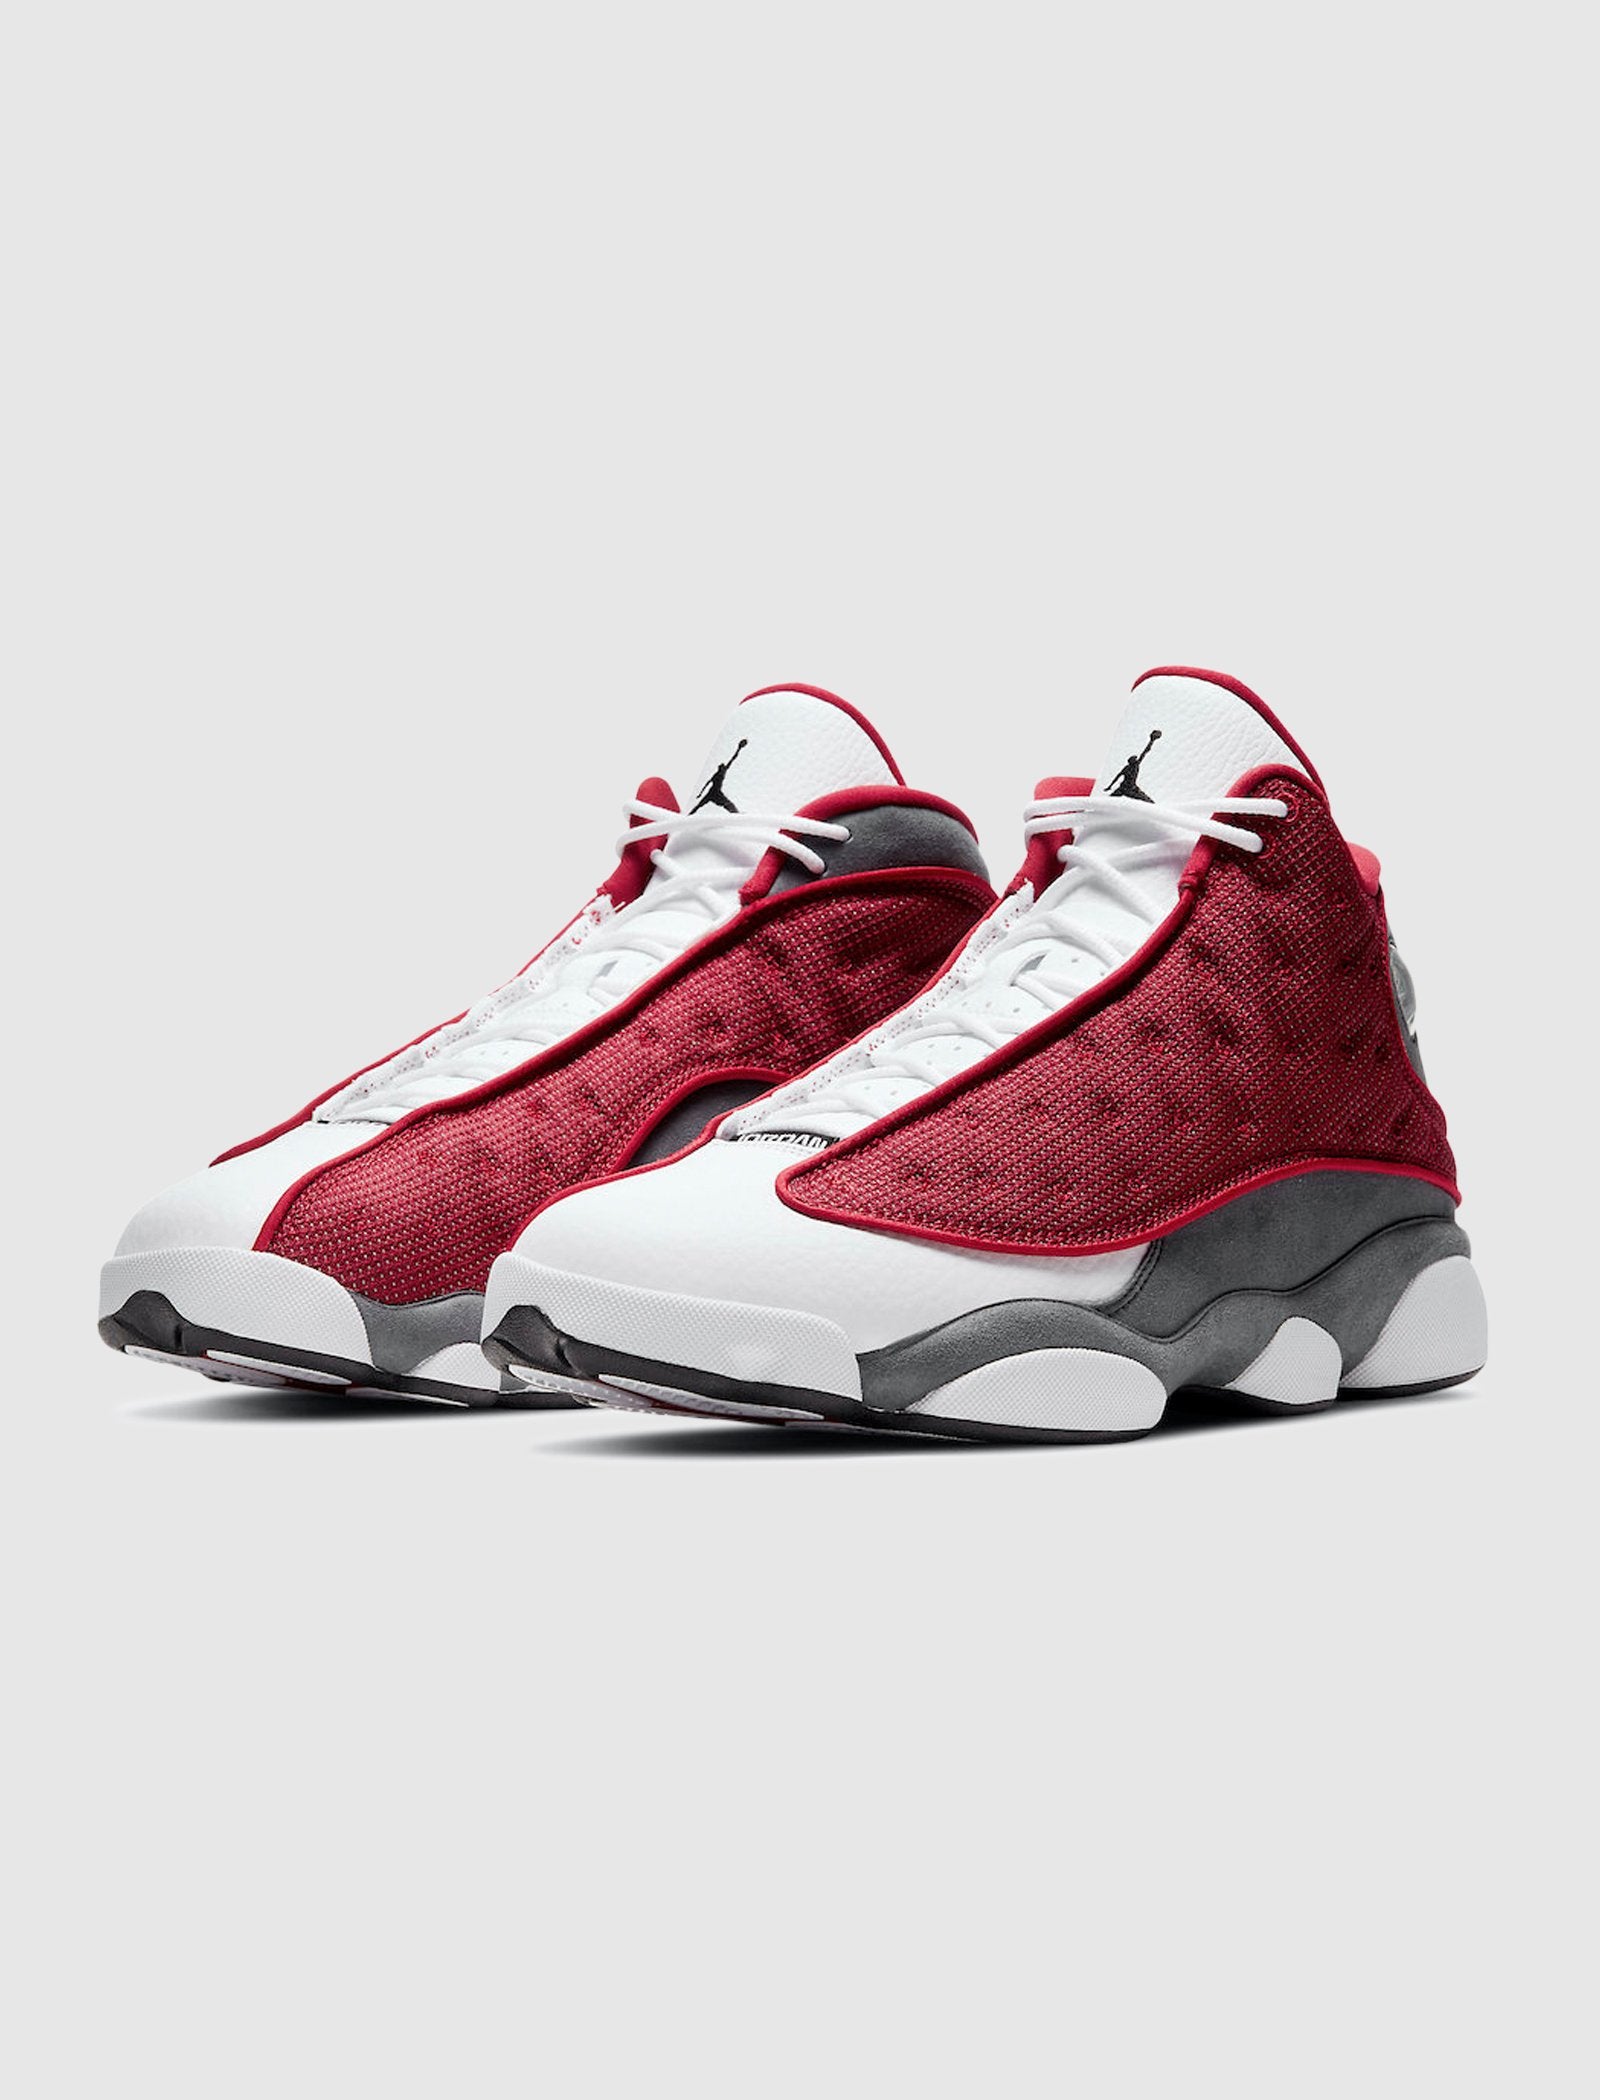 Air Jordan 13 Retro “Red Flint”